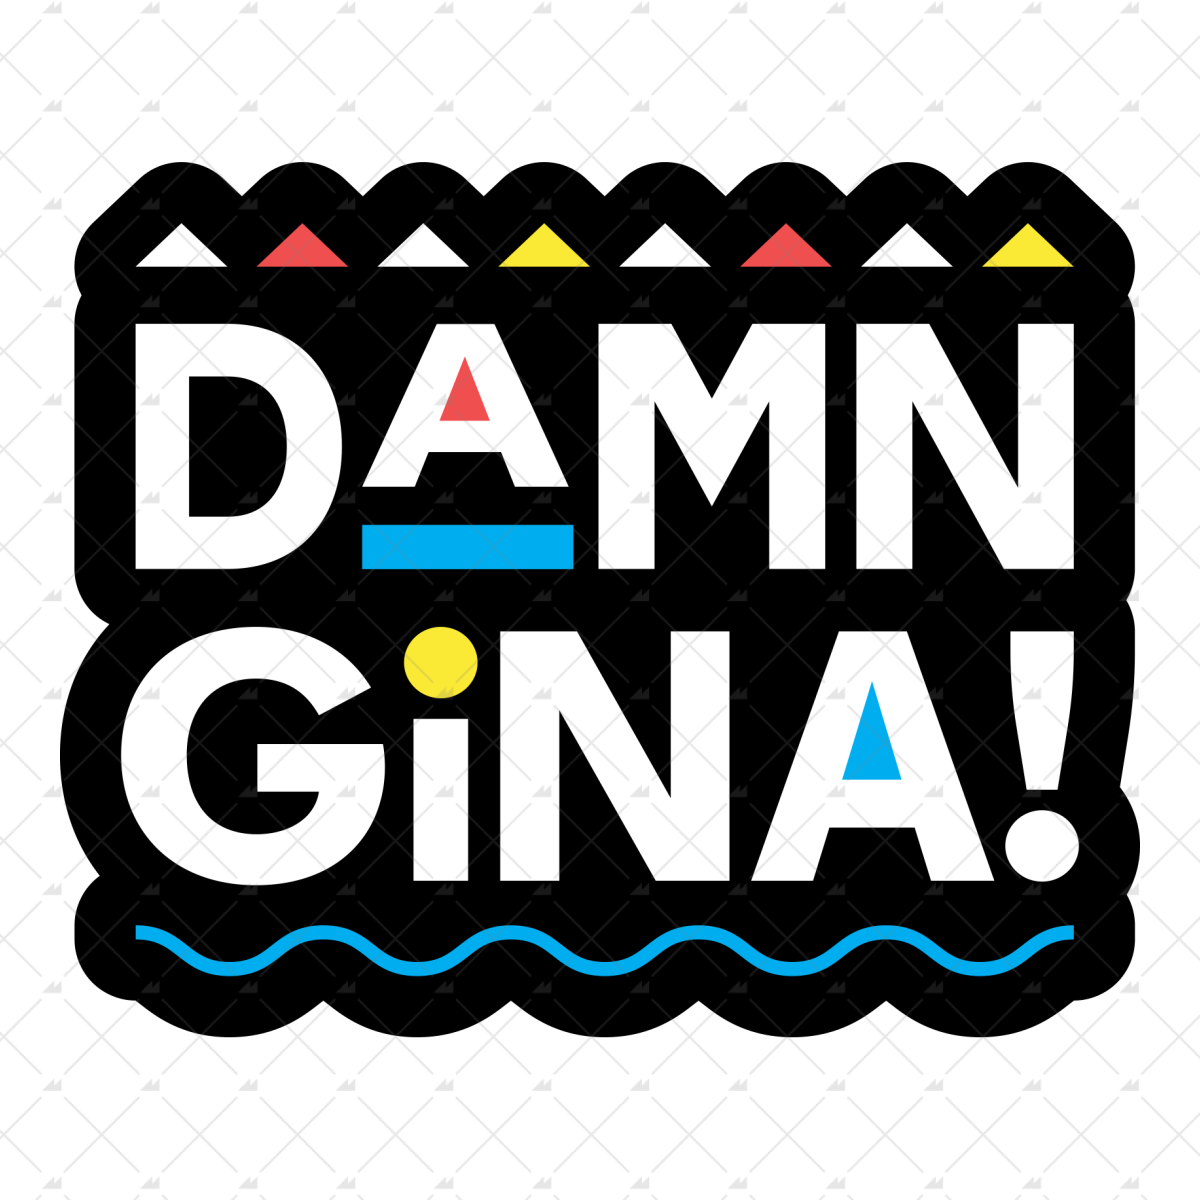 Damn Gina - Sticker